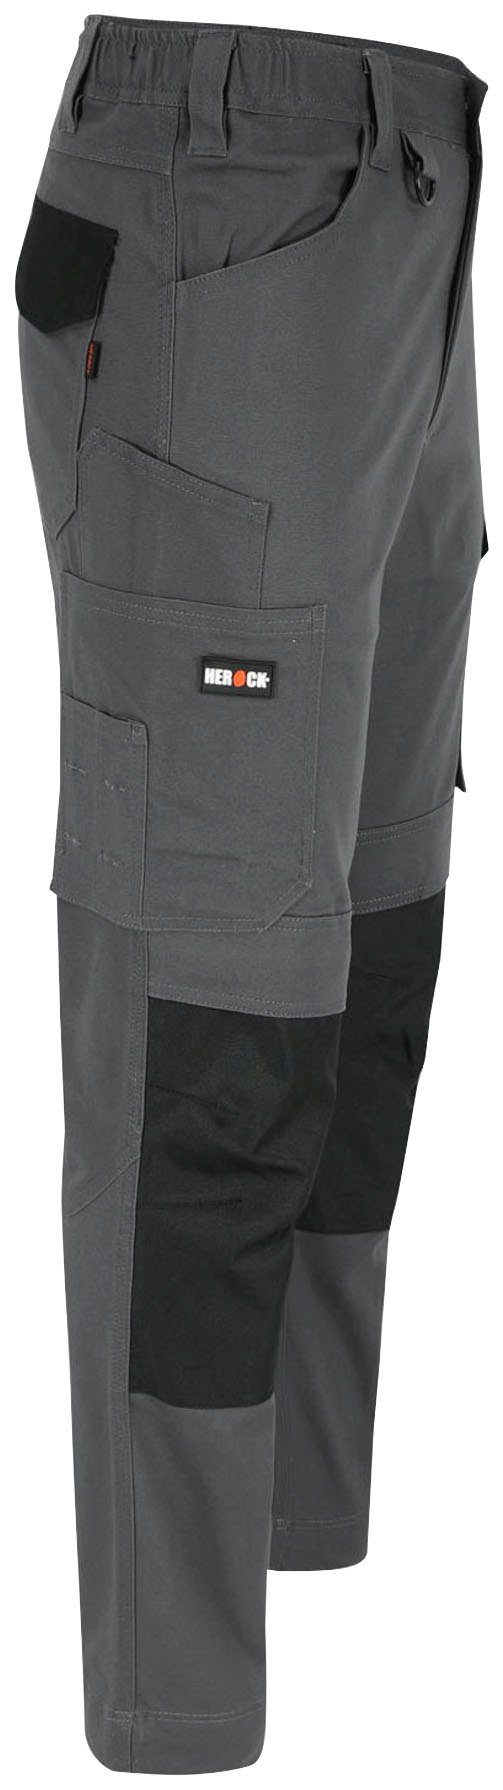 Slim wasserabweisend DERO Fit Passform, grau Herock Arbeitshose 2-Wege-Stretch, Multi-Pocket,